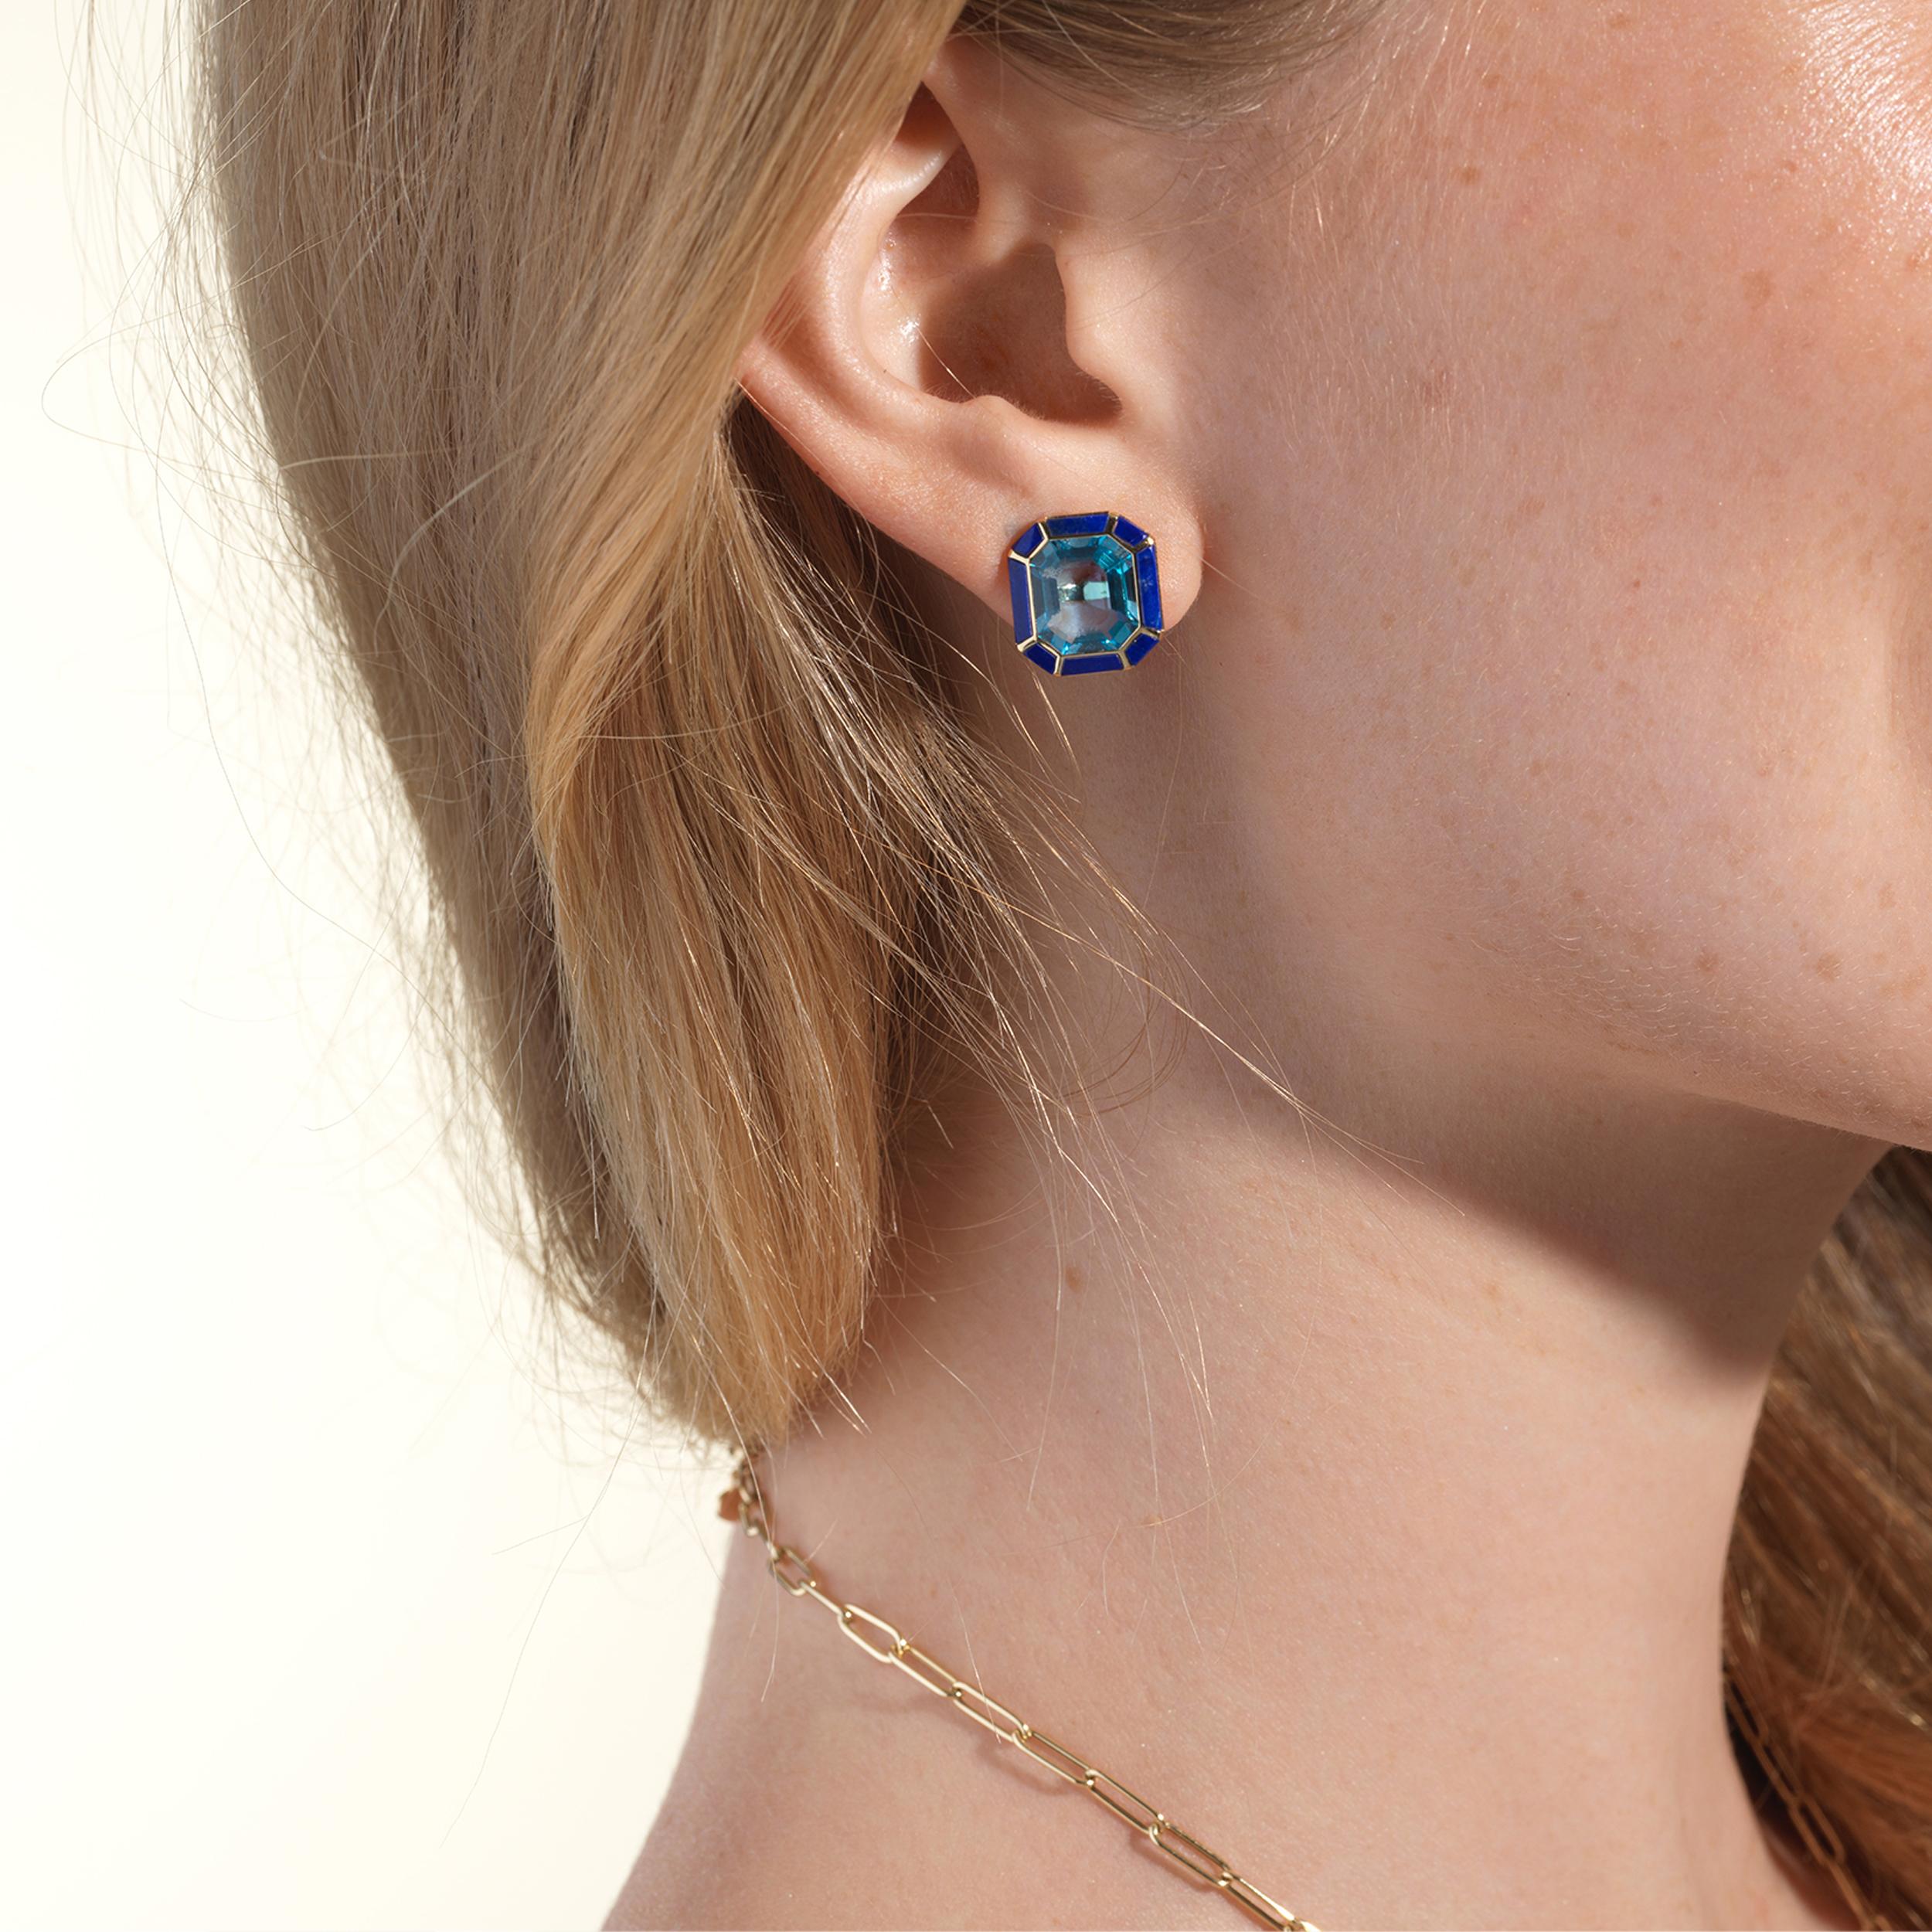 Les boucles d'oreilles Topaze bleue et Lapis Lazuli de la Collection 'Melange' présentent un mélange captivant d'élégance et de charme. Réalisées avec une attention exquise aux détails, ces boucles d'oreilles présentent de superbes pierres